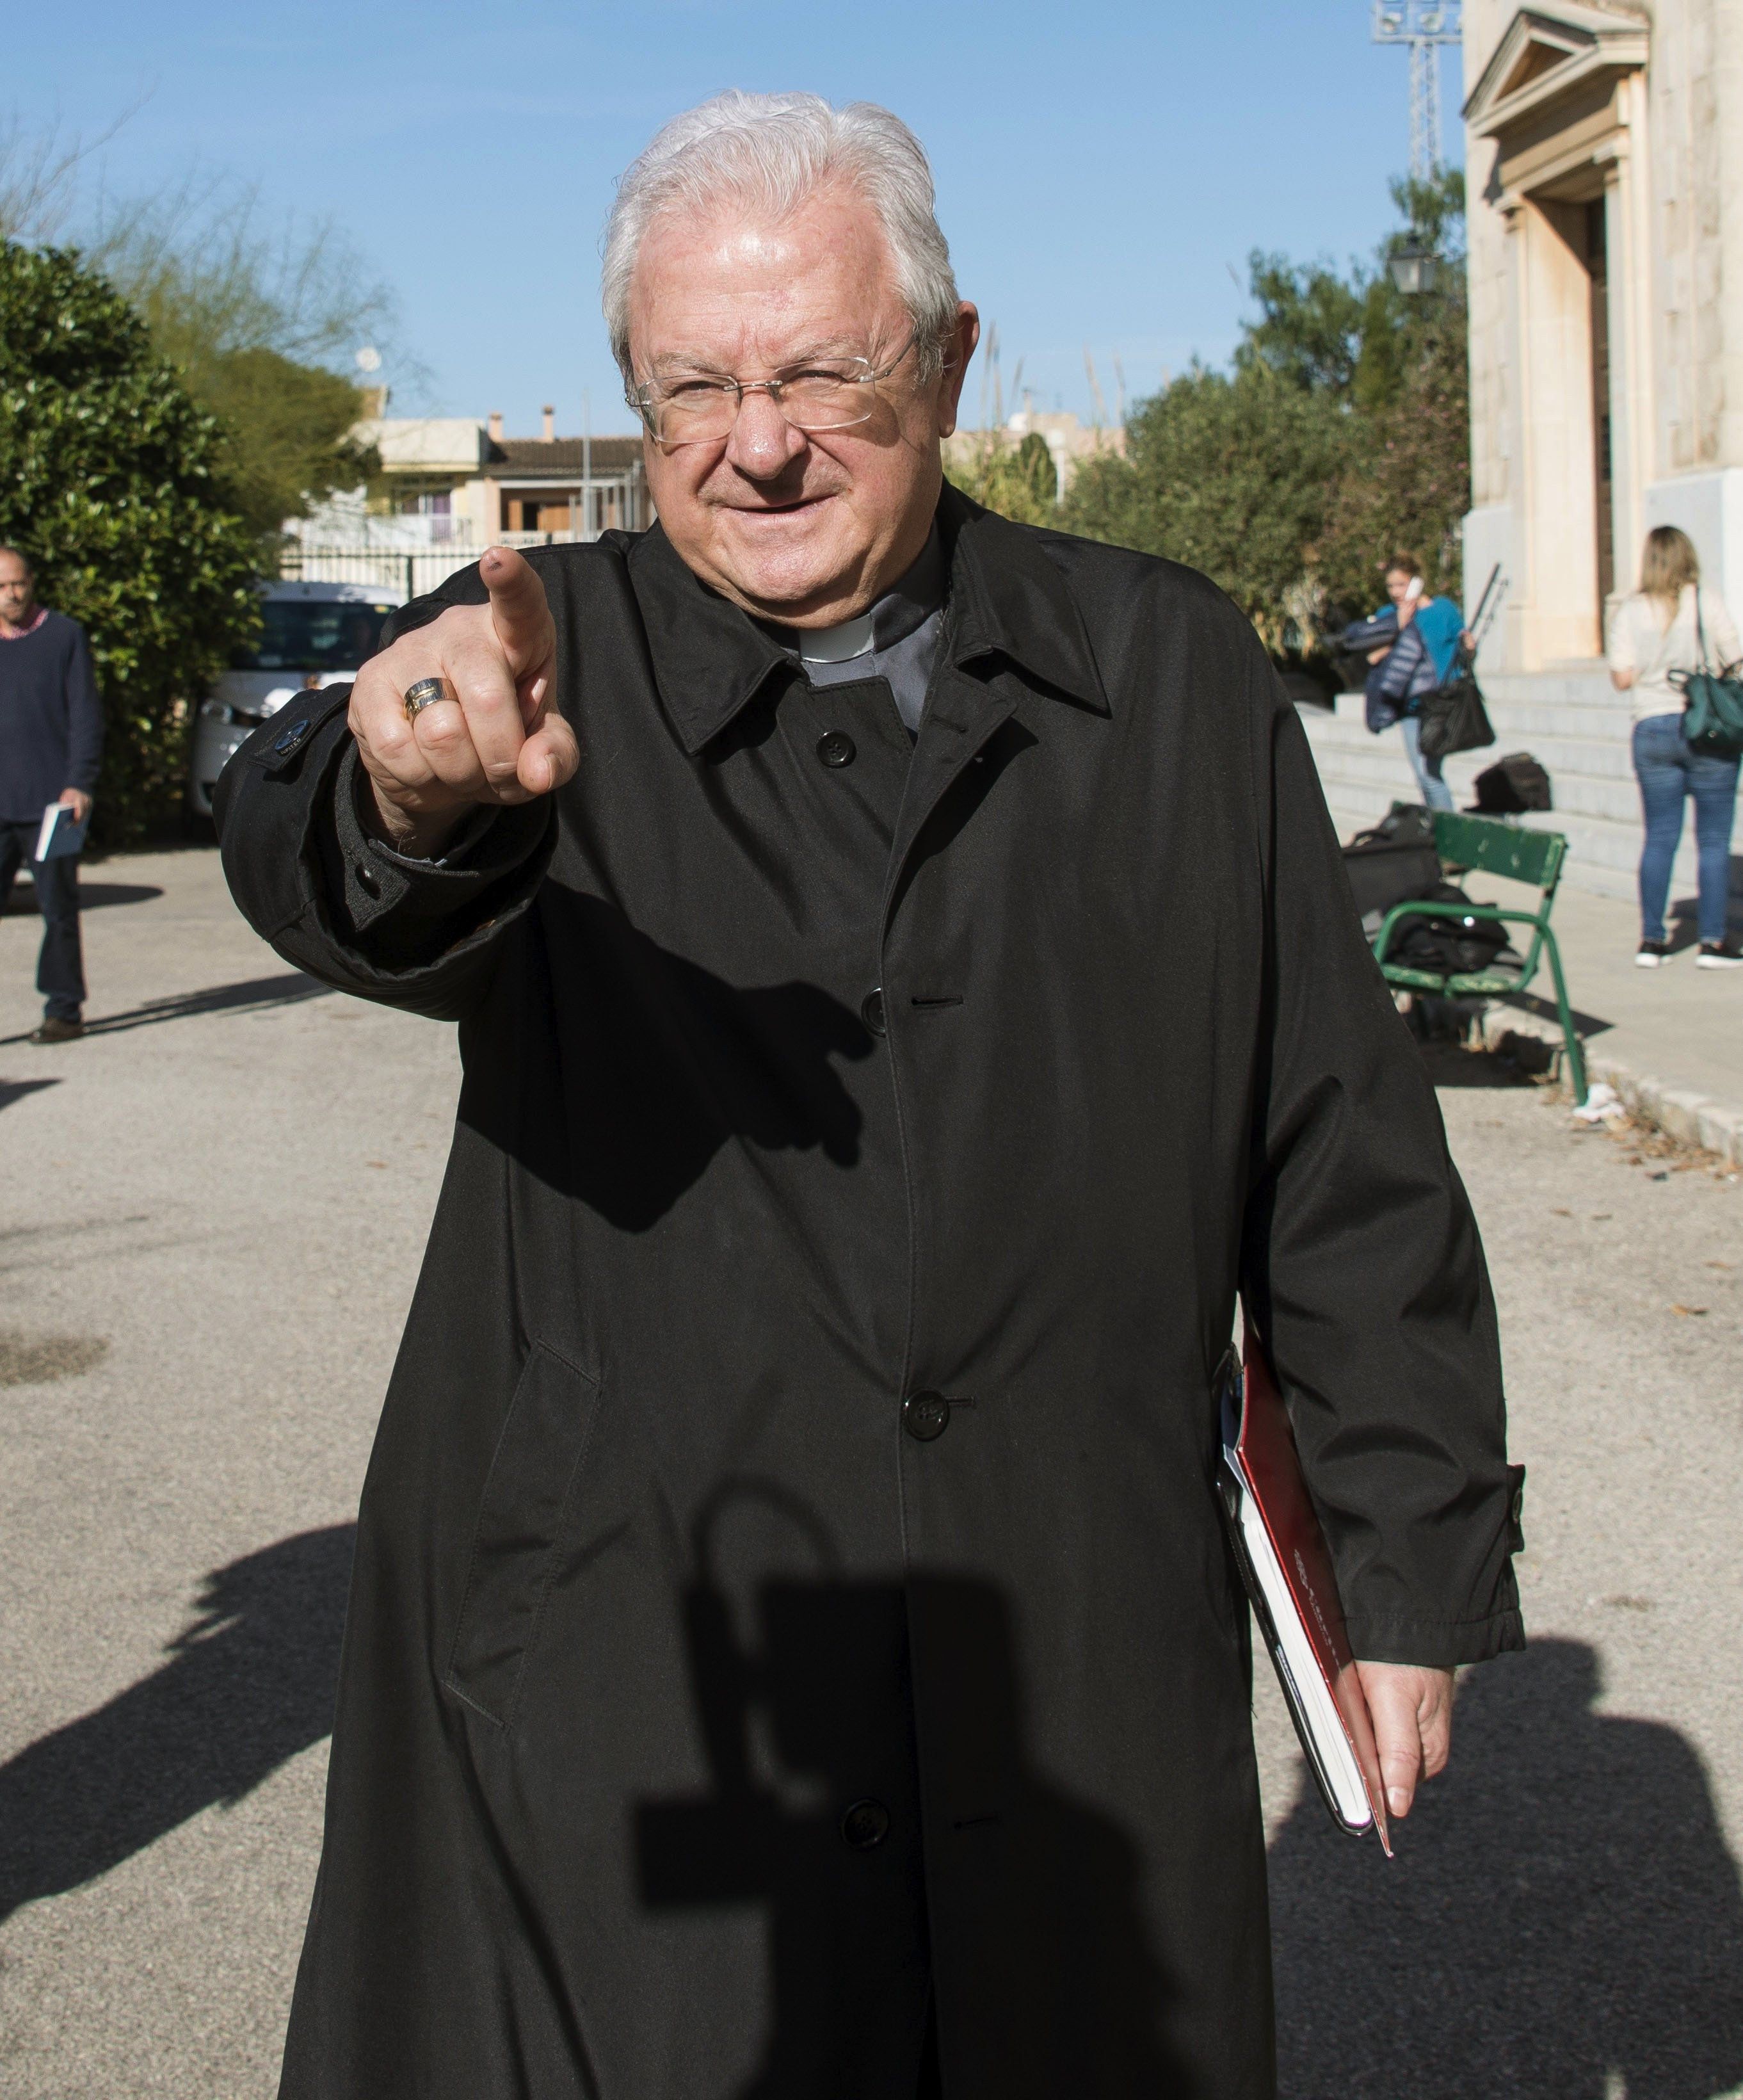 El obispo de Mallorca, destituido por mantener una relación con su secretaria casada